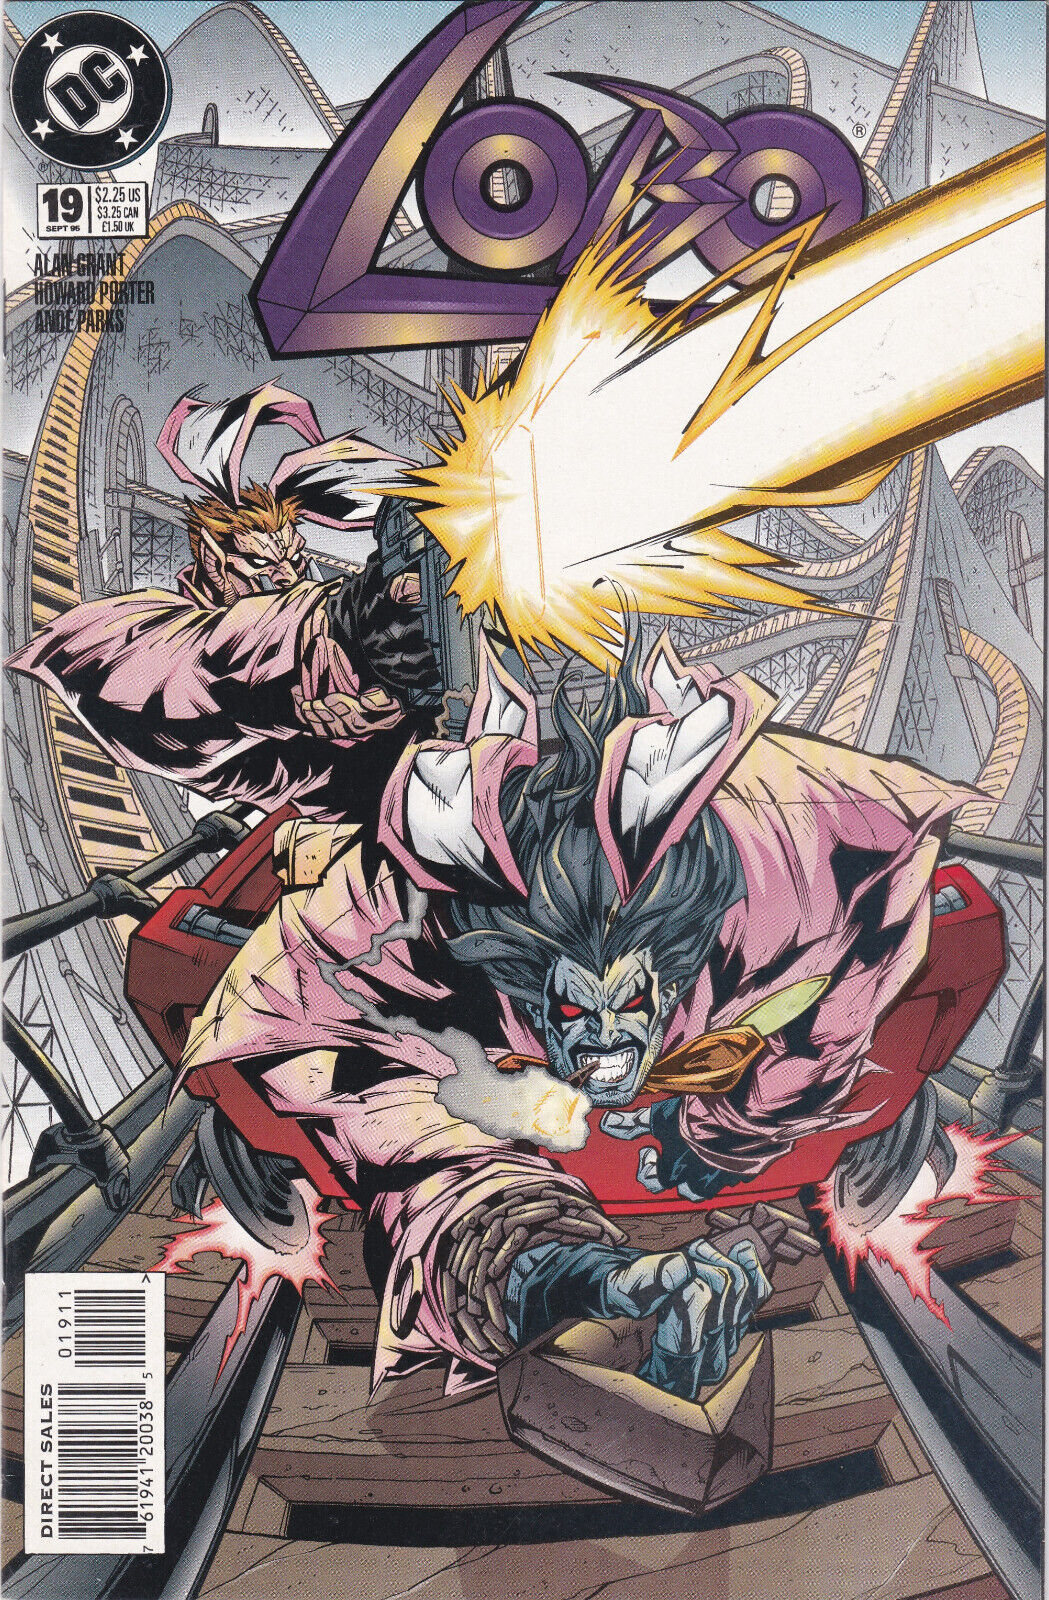 Lobo #19 Vol. 2 (1993-1999) DC Comics, High Grade